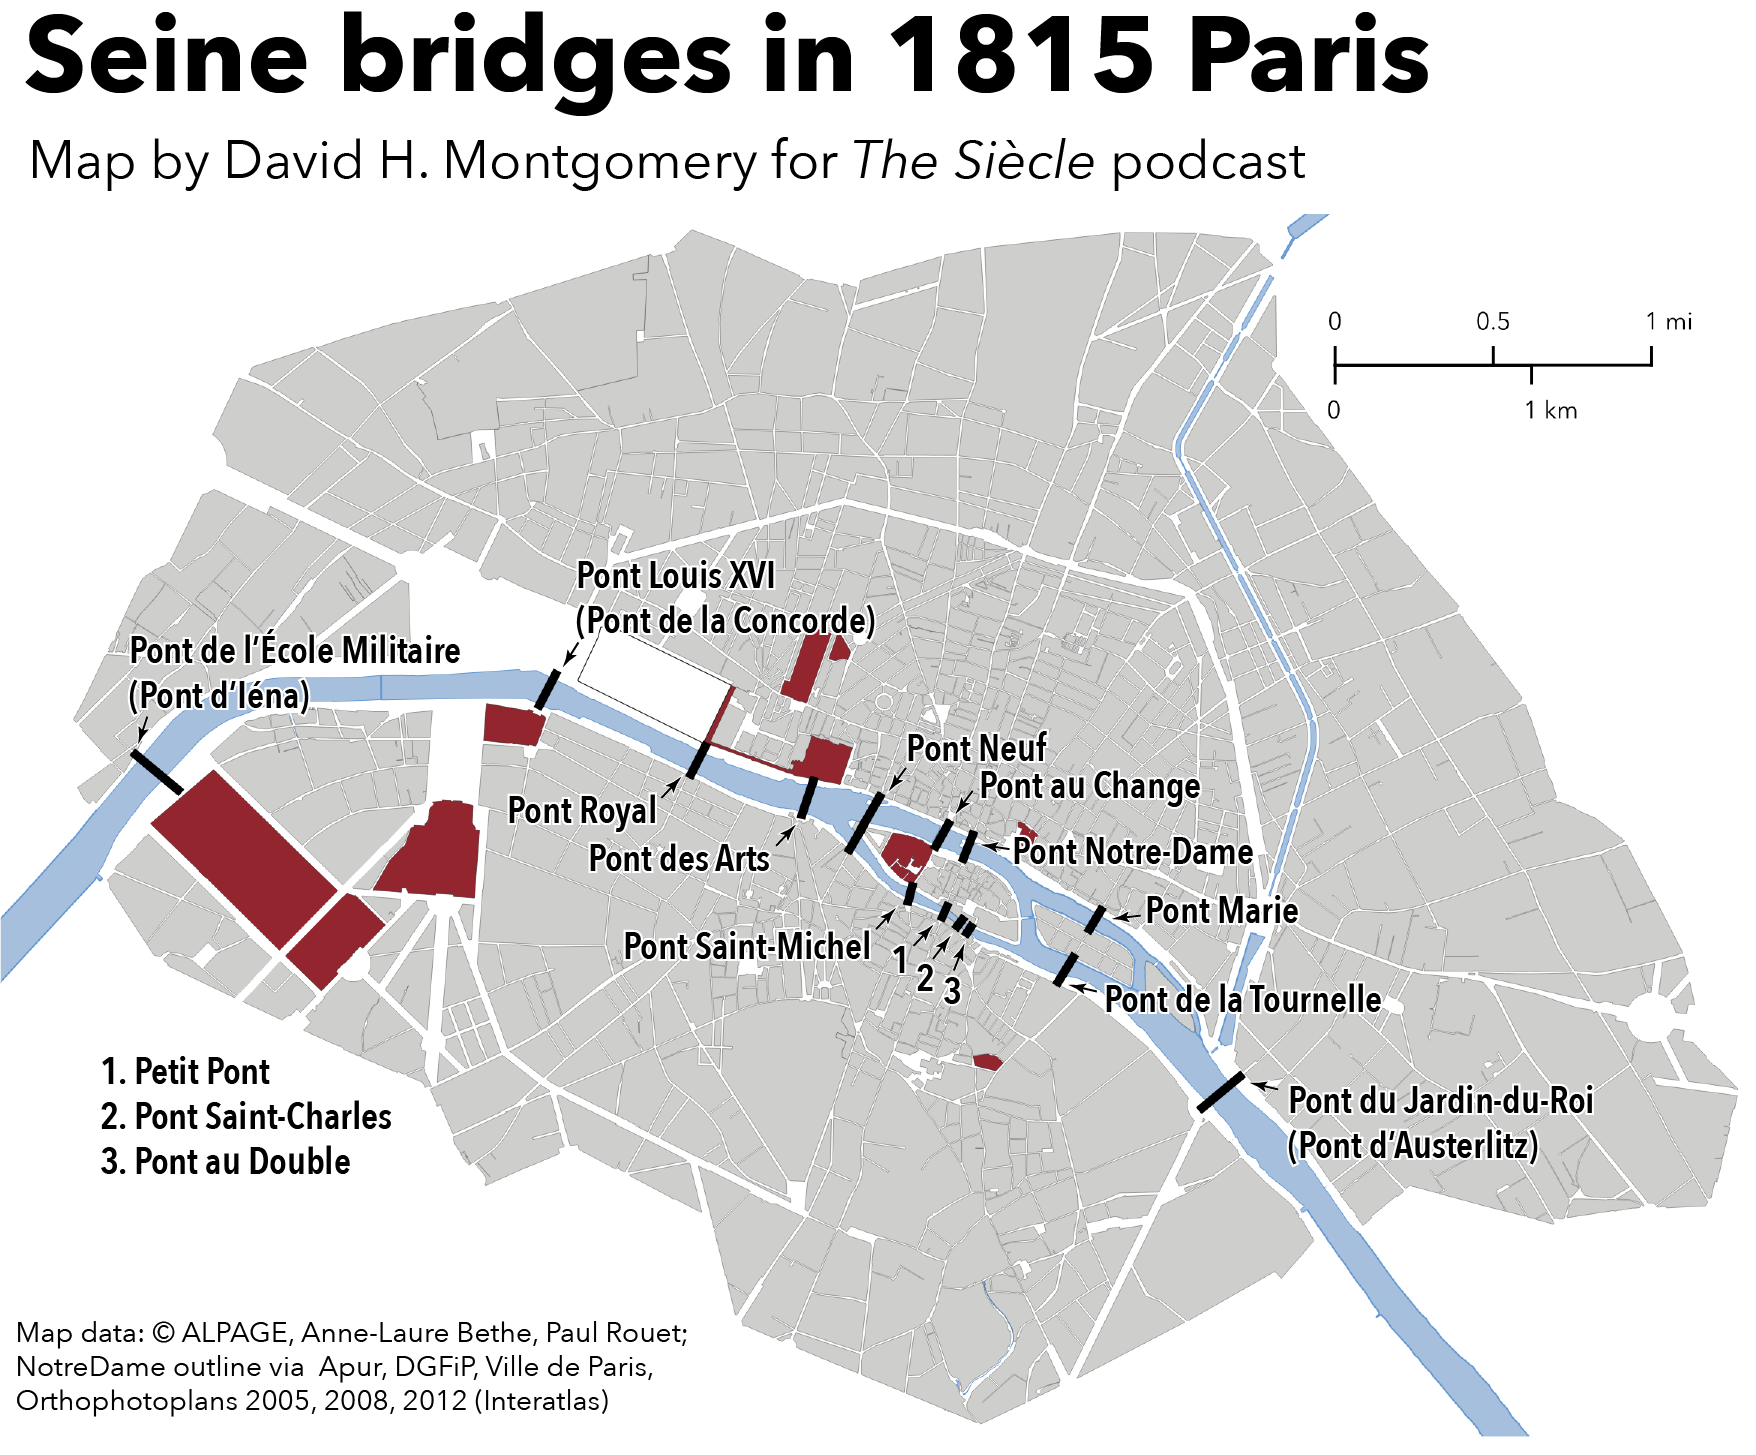 Bridges over the Seine in 1815 Paris